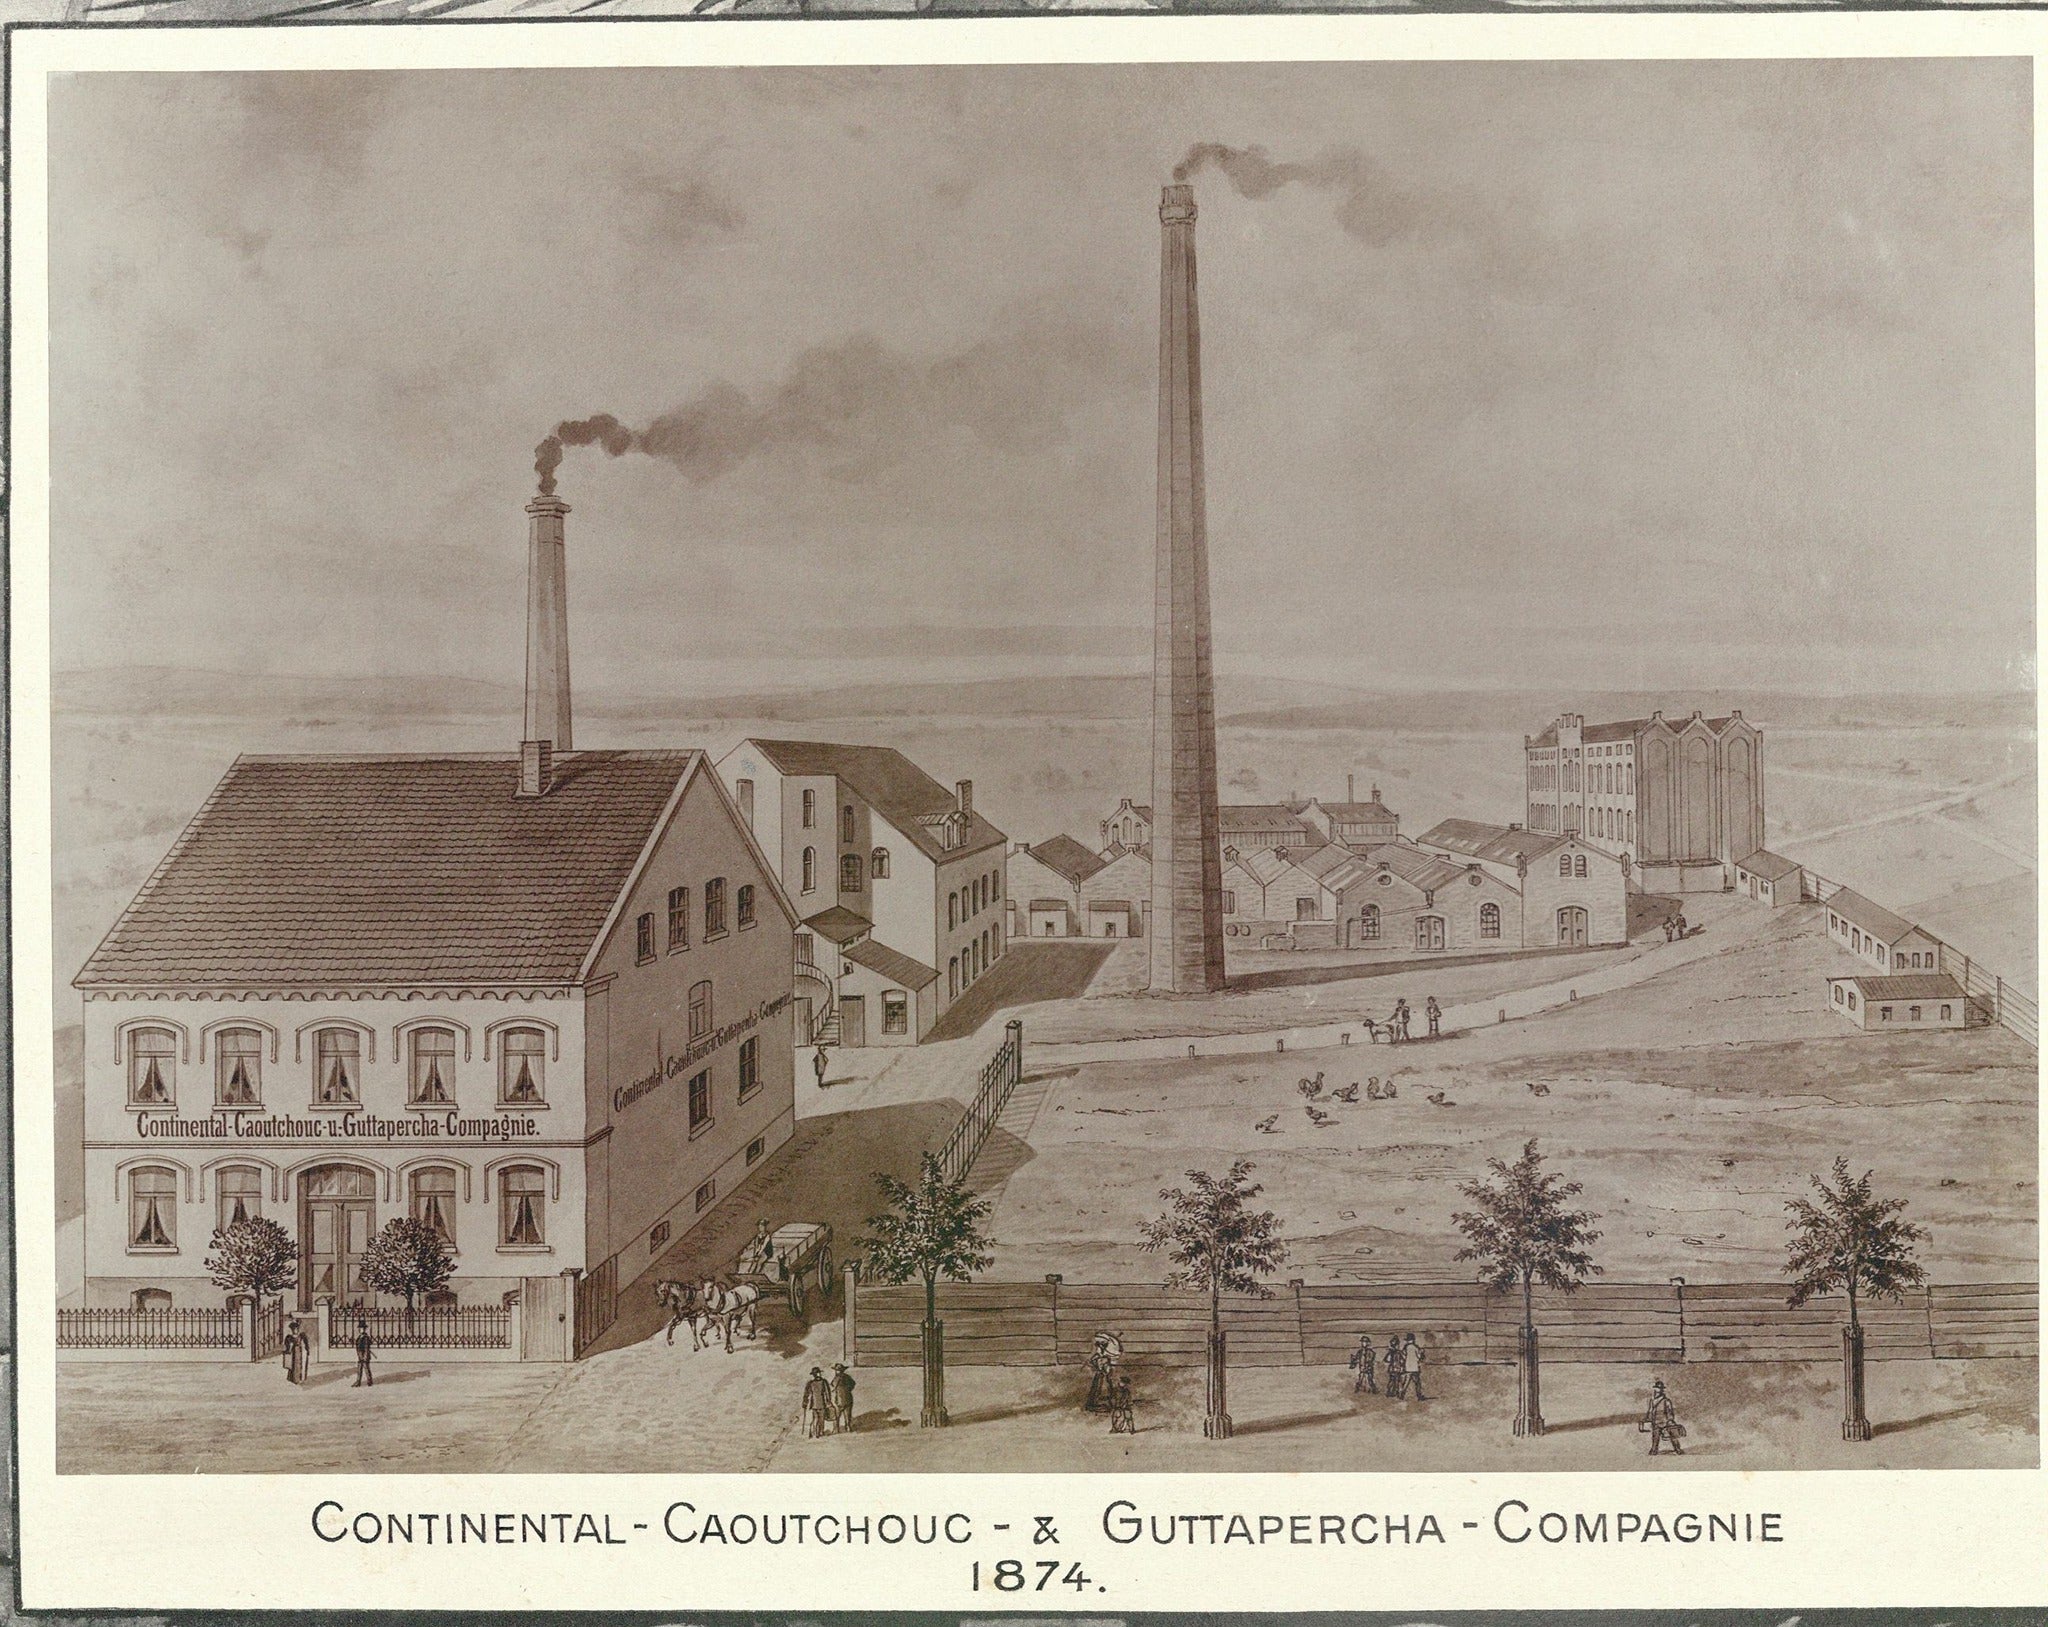 Continental Caoutchouc & Gutta-Percha Company